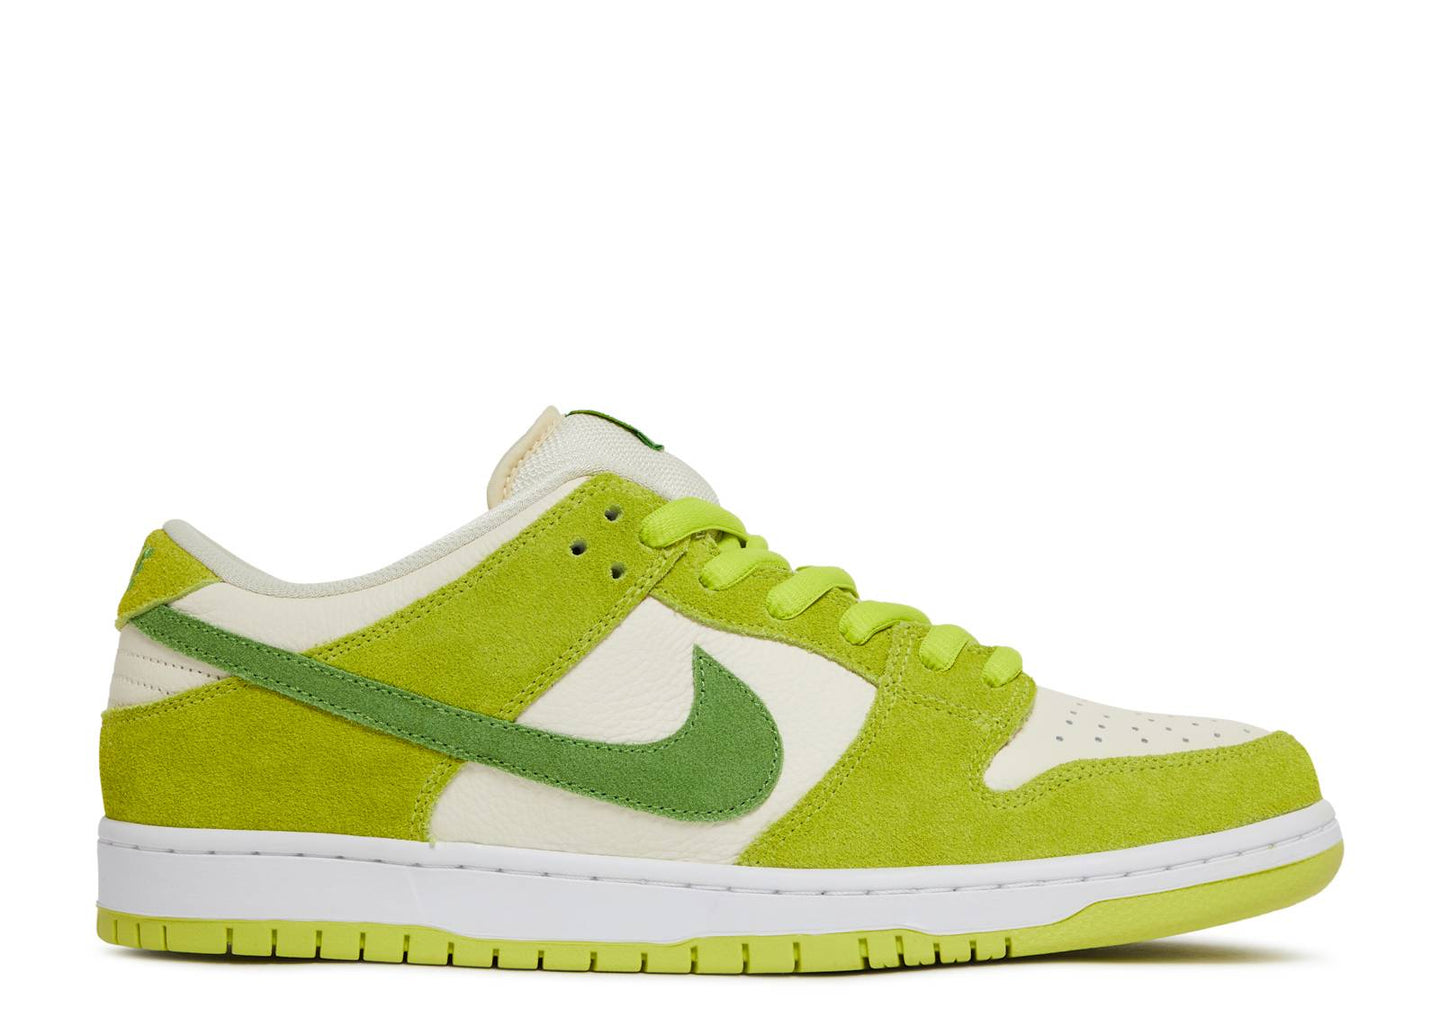 Nike SB Dunk Low - Green Apple - Used